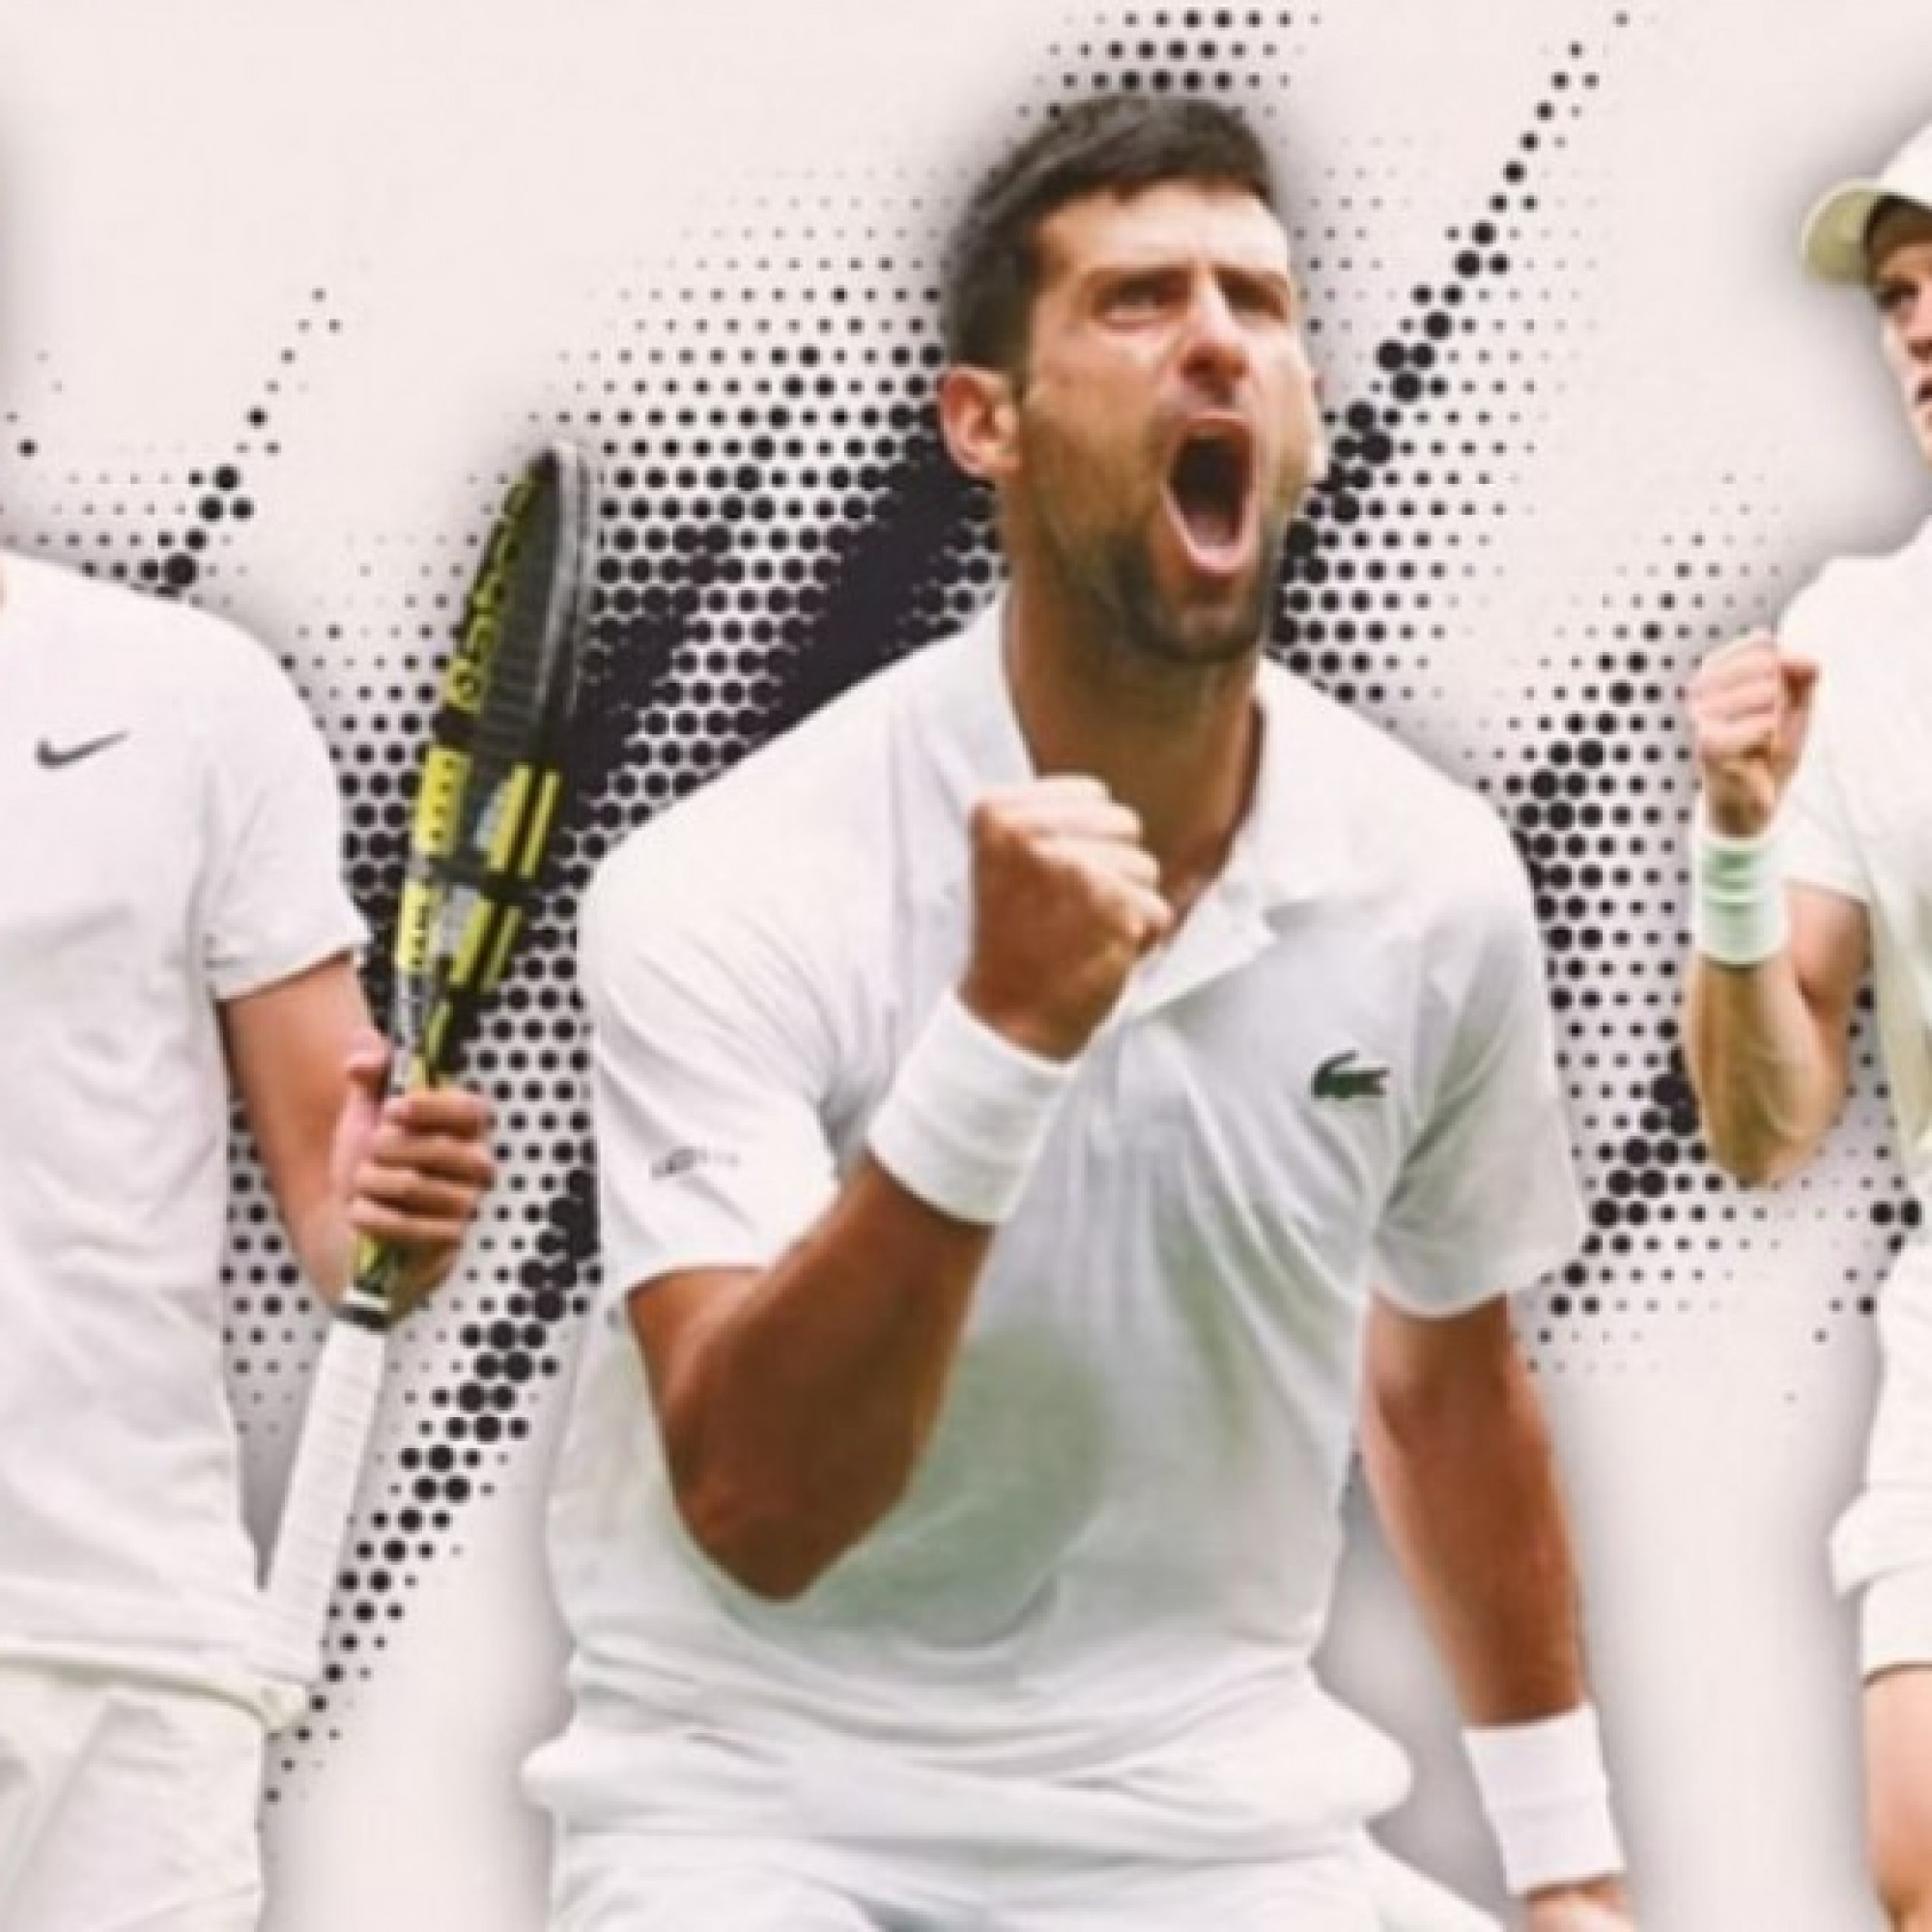  - Sinner an toàn trên "đỉnh", Djokovic và Alcaraz nguy cơ văng top 4 (Bảng xếp hạng tennis 1/7)